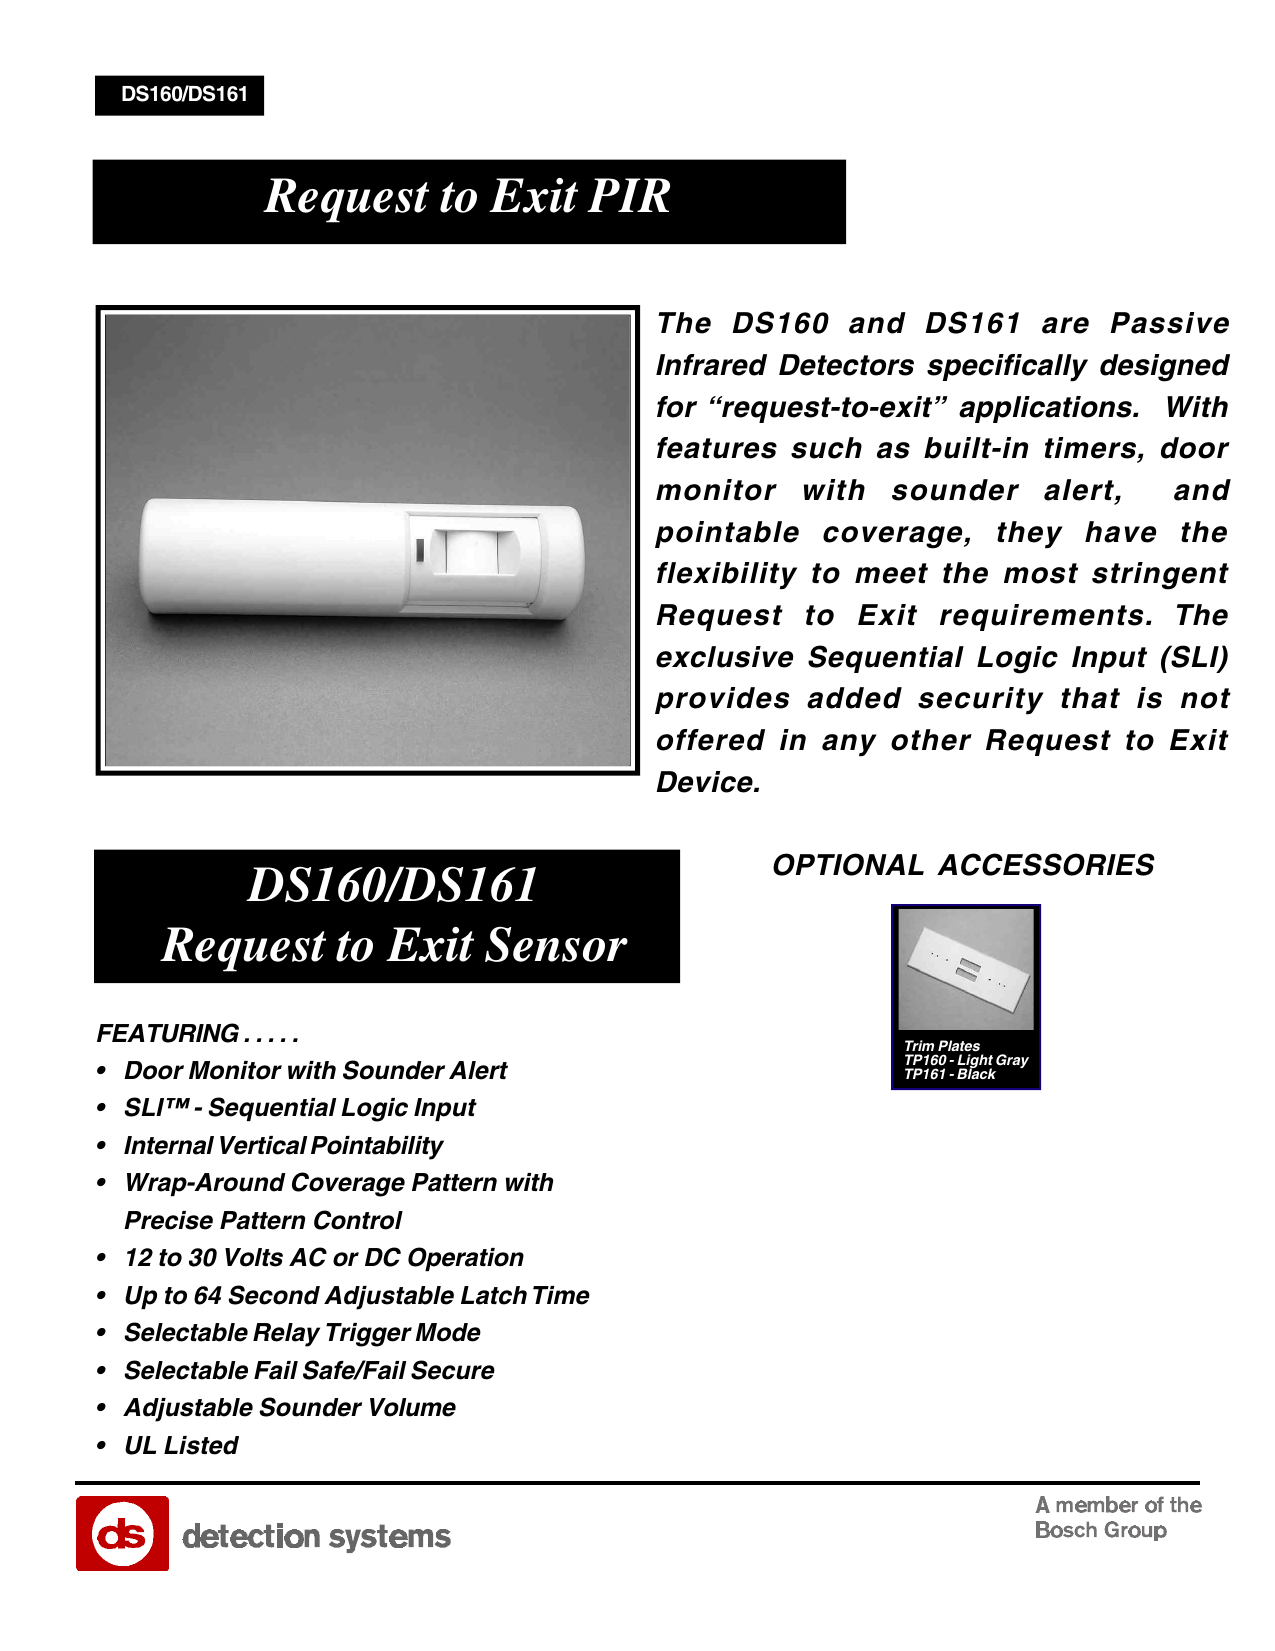 DS160 PIR Exit Sensor Details about   BOSCH 